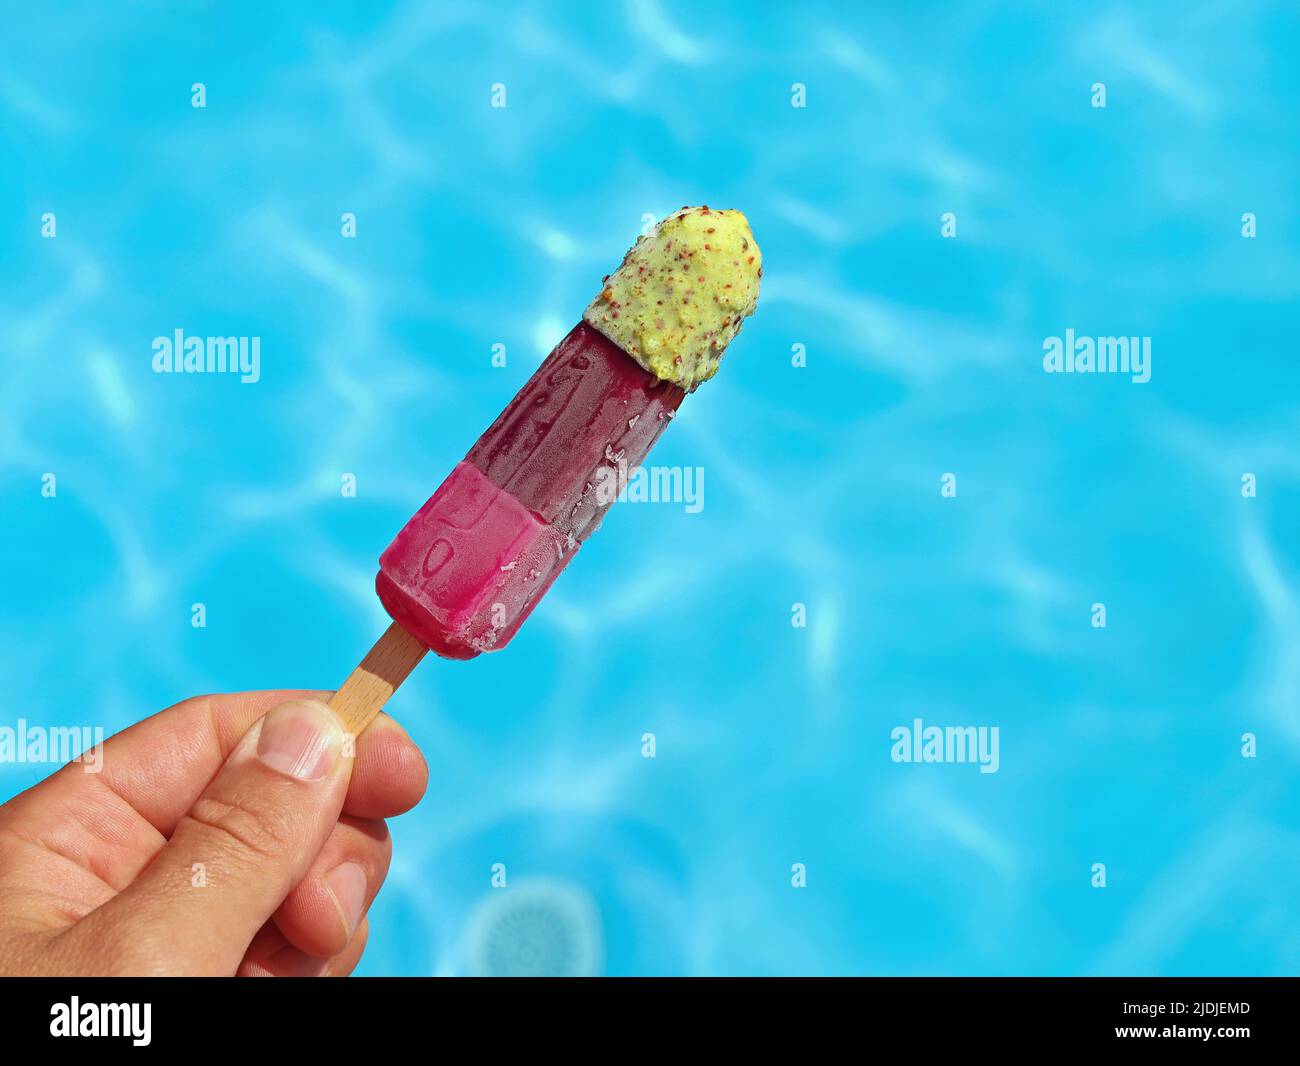 Mano sosteniendo paletas de colores afrutados o hielo de agua frente a una superficie azul de la piscina, ayuda contra el concepto de calor del verano imagen Foto de stock